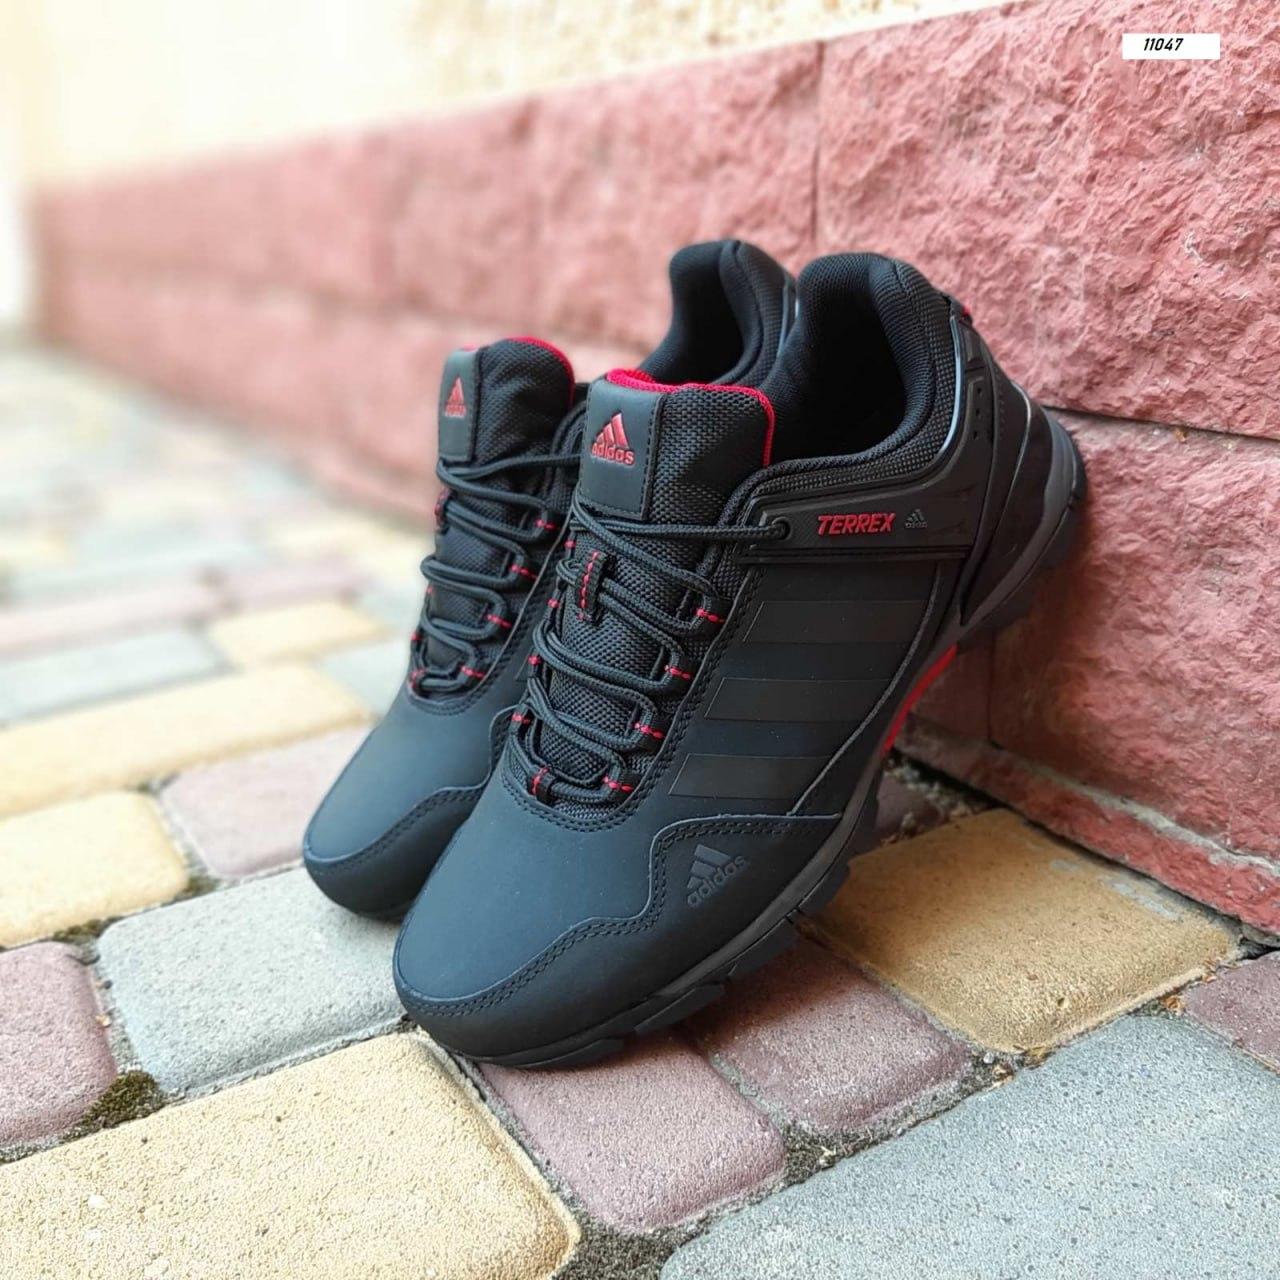 Adidas Terrex чоловічі весняні/літні/осінні чорні кросівки на шнурках.Демісезонні нубук кроси